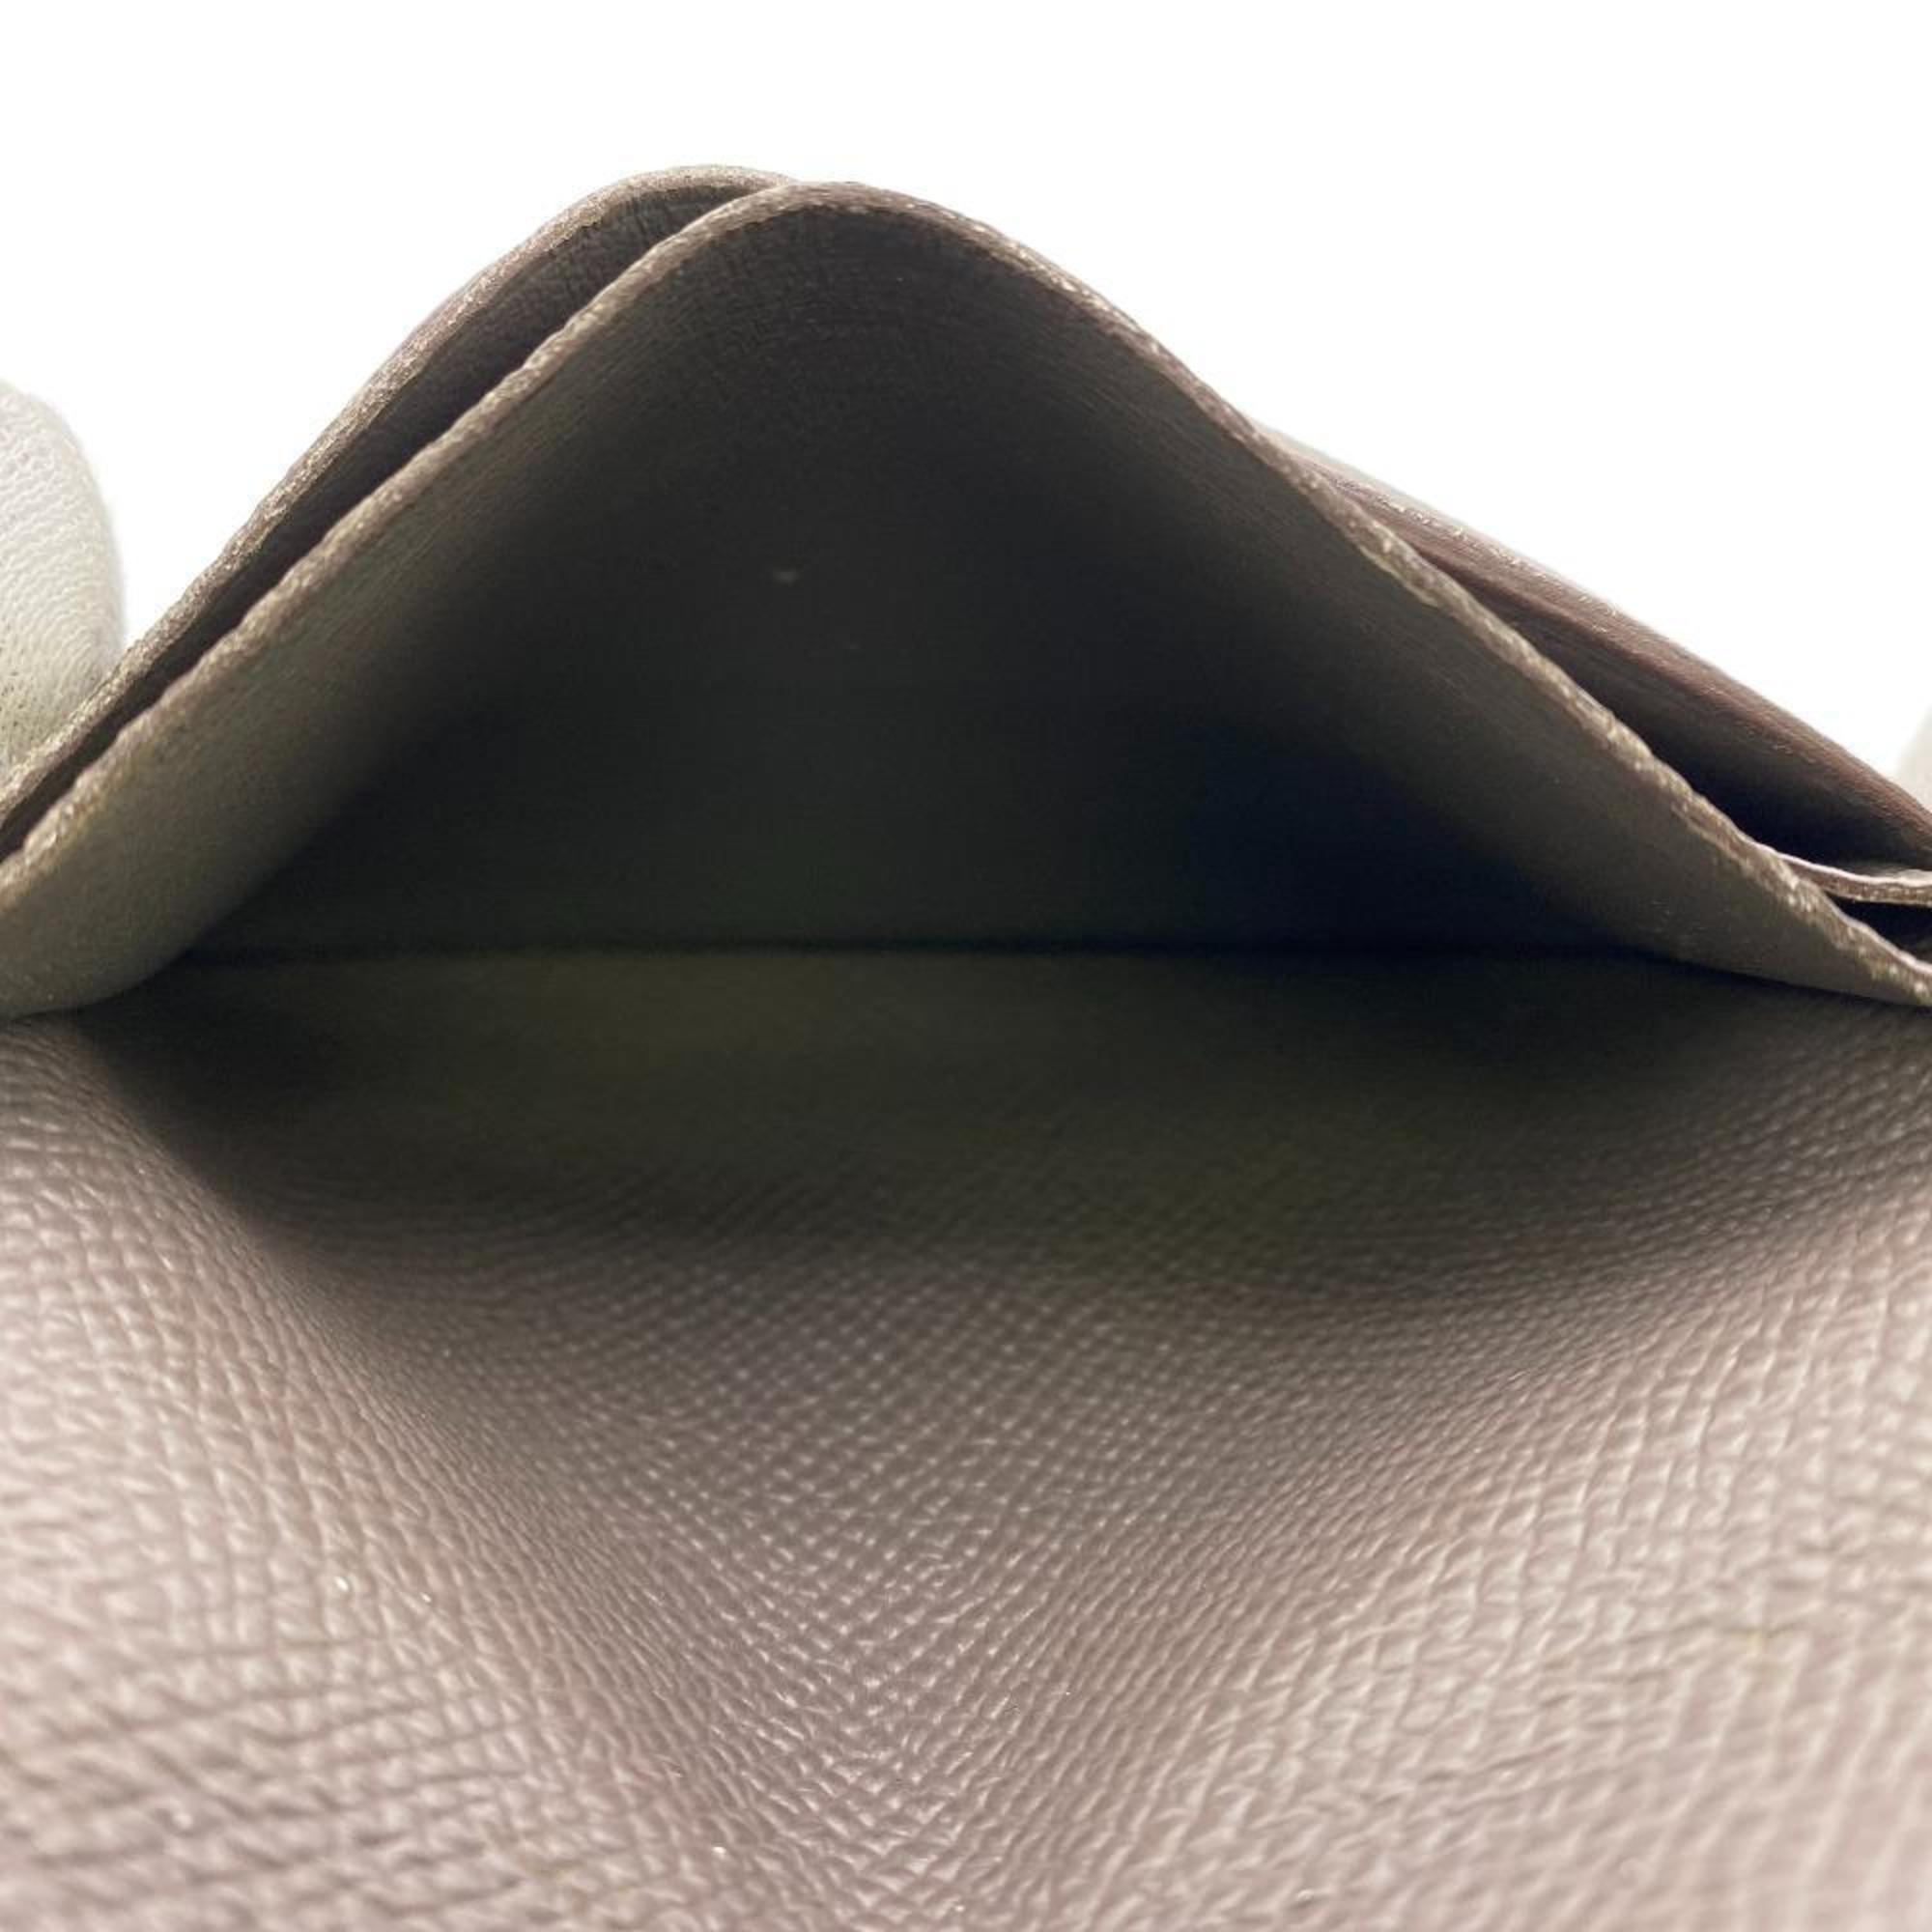 HERMES T1003TF Bearn Compact Bi-fold Wallet Beige Women's